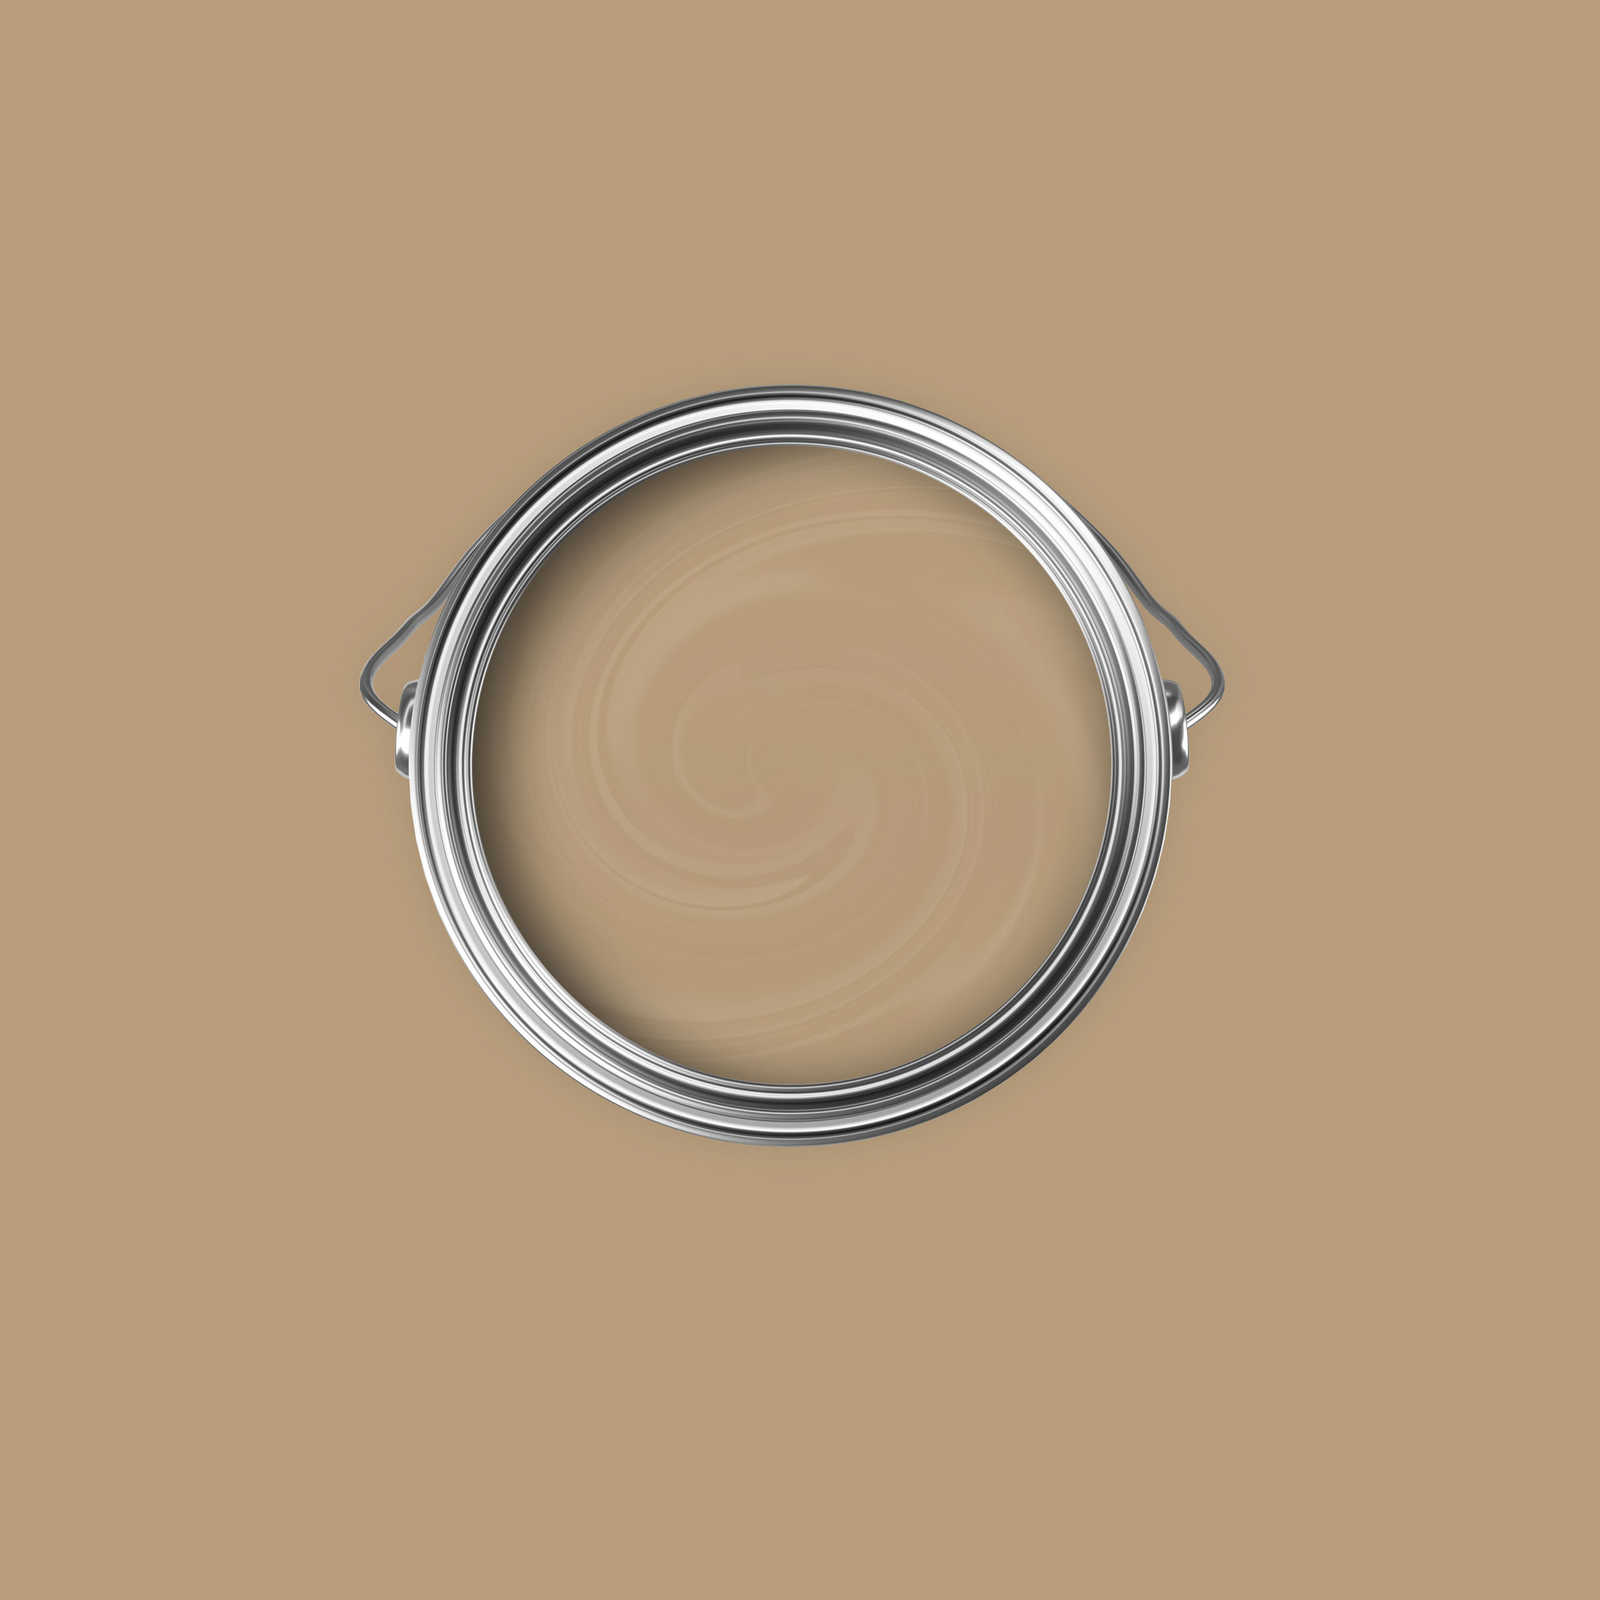             Premium Muurverf Naturel Cappuccino »Essential Earth« NW710 – 2,5 Liter
        